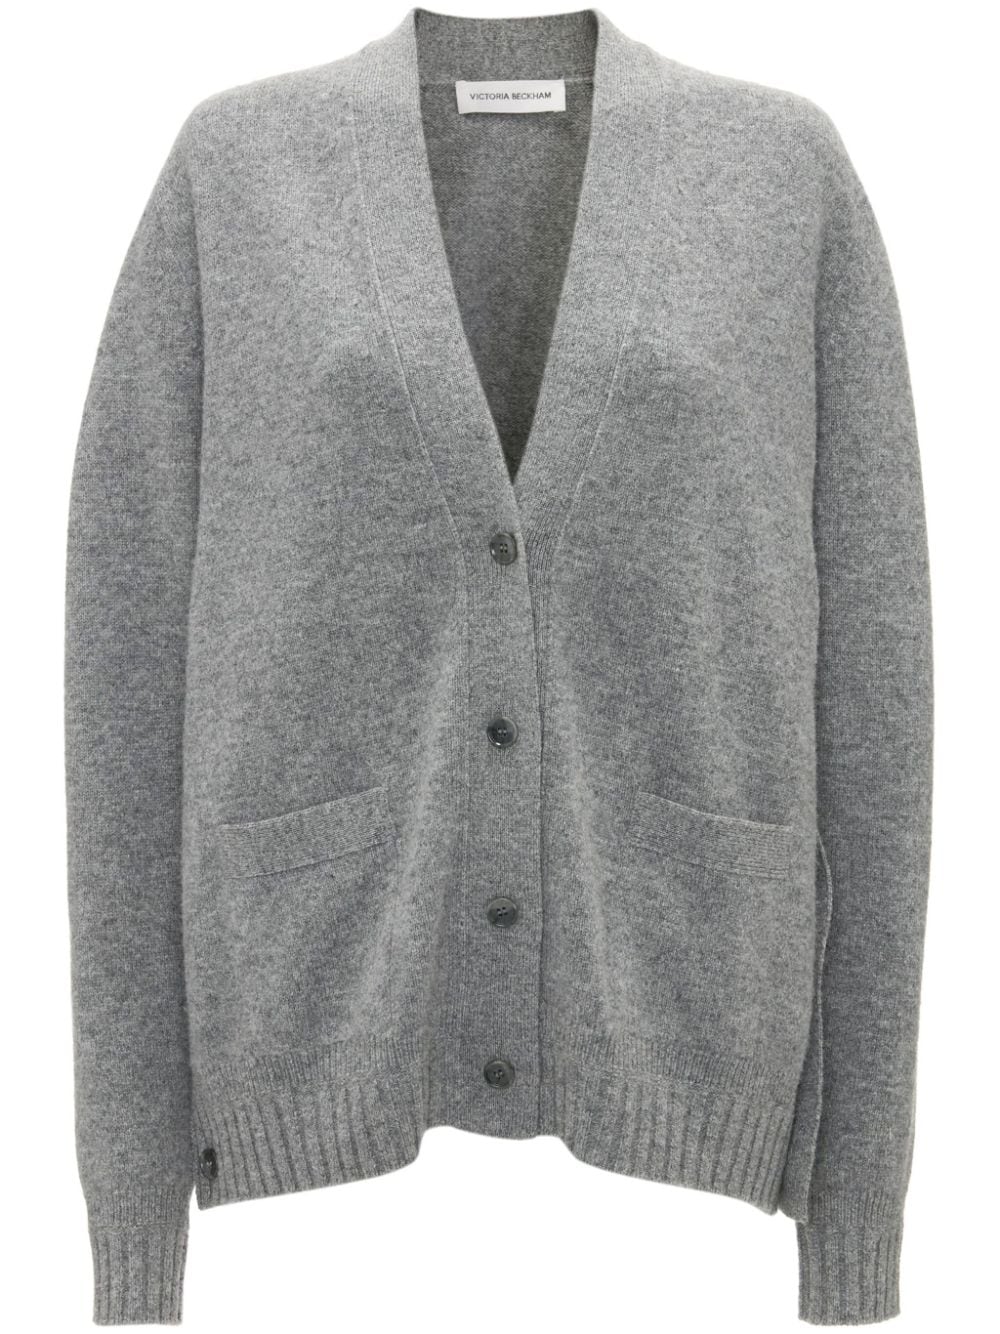 Victoria Beckham fine-knit wool cardigan - Grey von Victoria Beckham